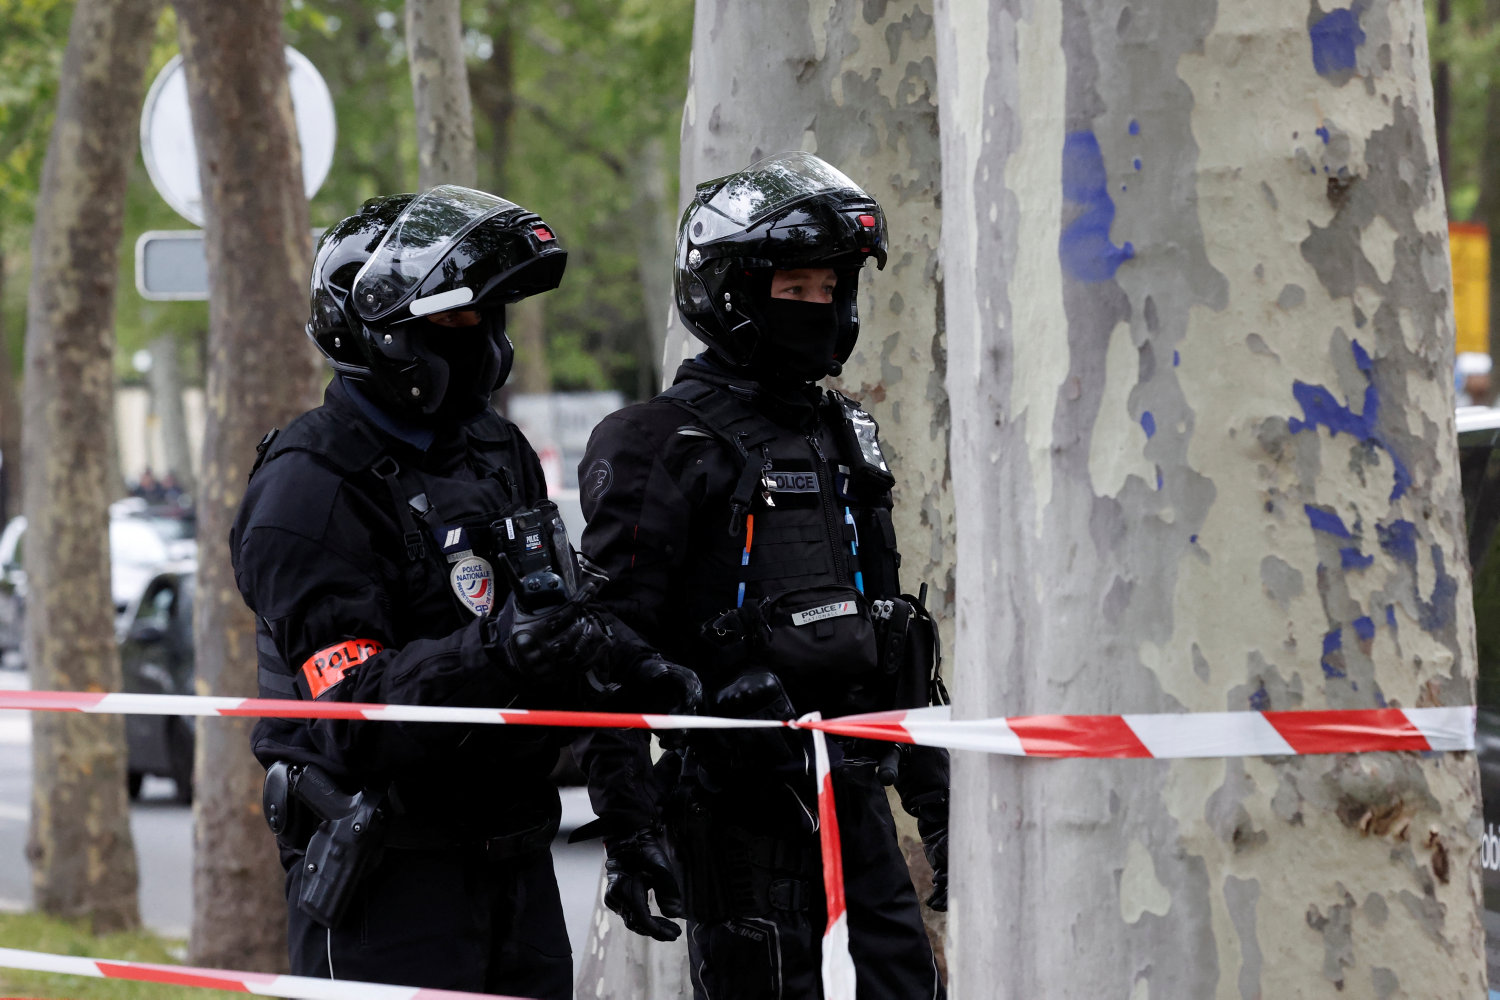 fransk politi anholder mand efter bombetrussel mod iransk konsulat